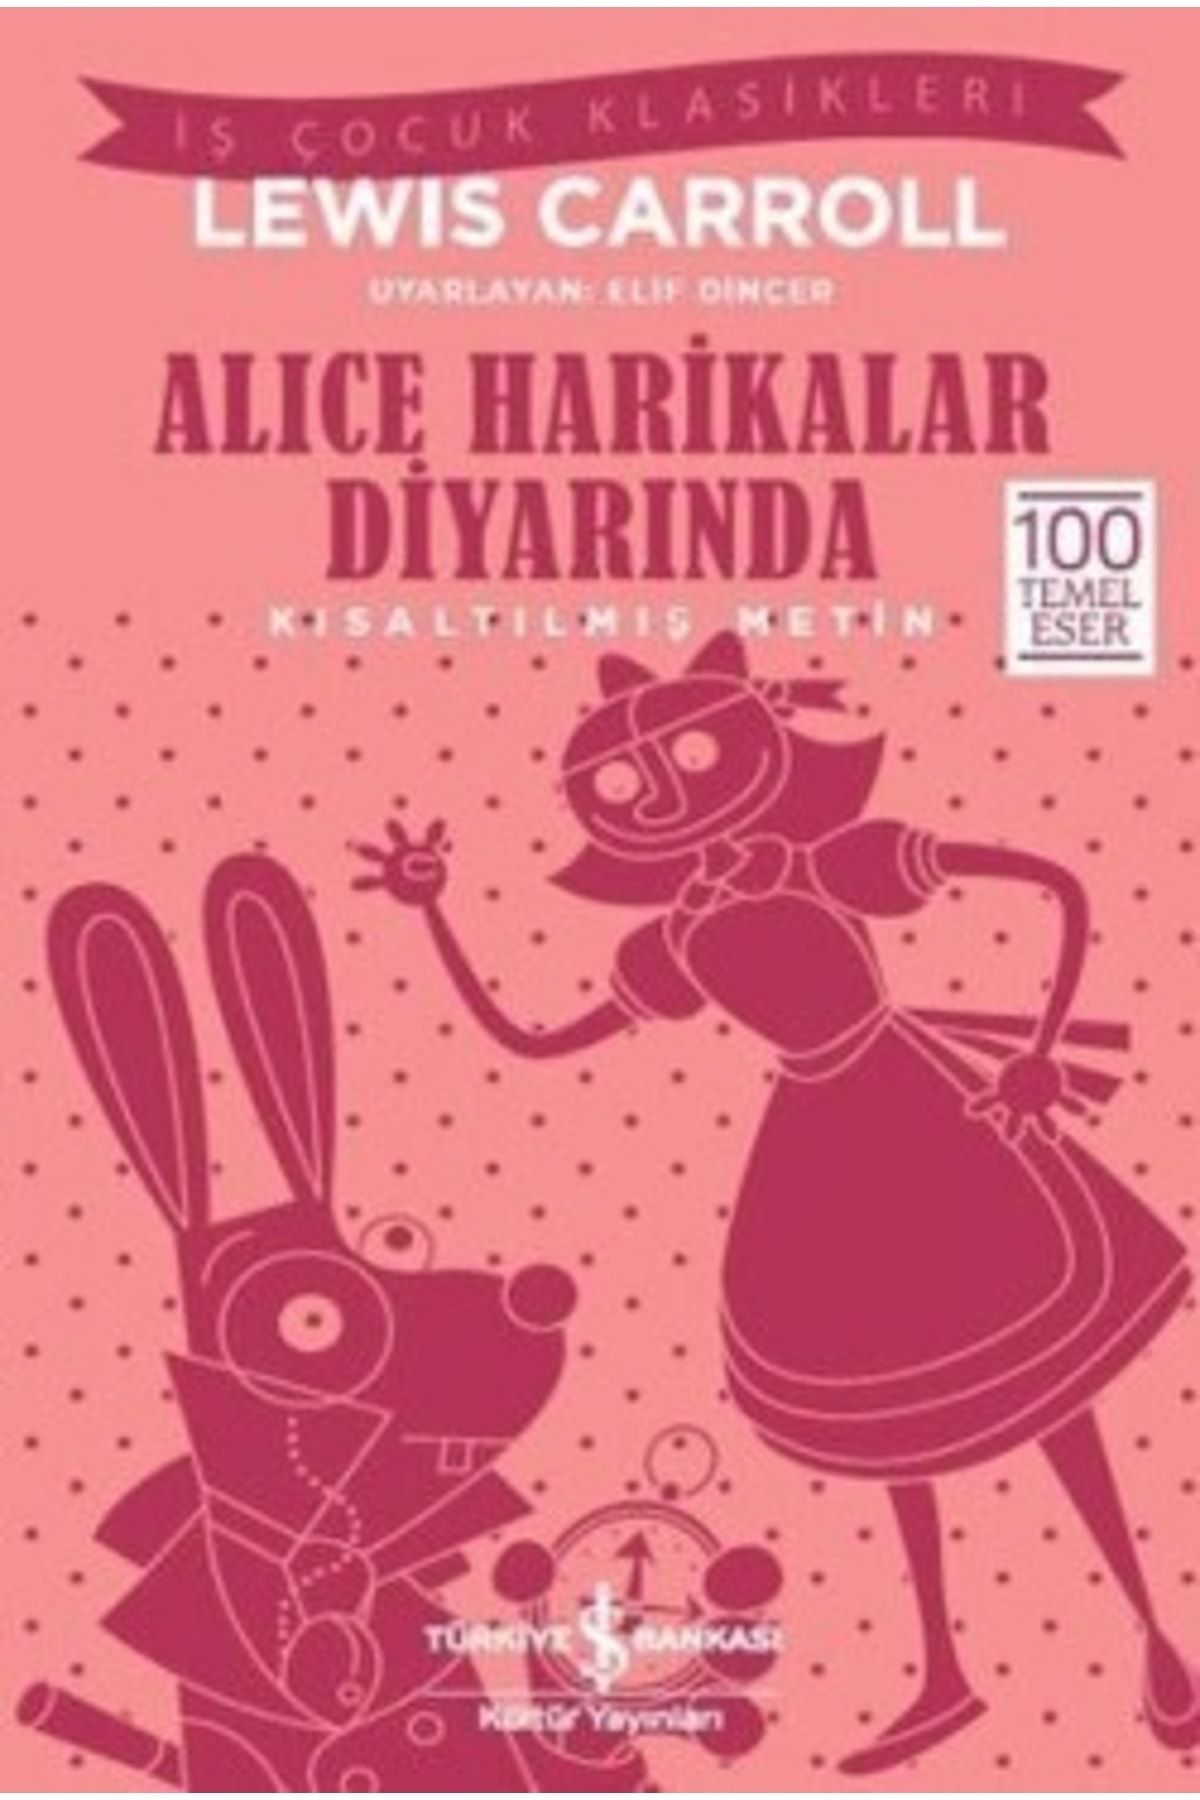 Türkiye İş Bankası Kültür Yayınları Alice Harikalar Diyarında – Kısaltılmış Metin - Lewis Carroll - 100 Temel Eser, Iş Çocuk Klasikleri